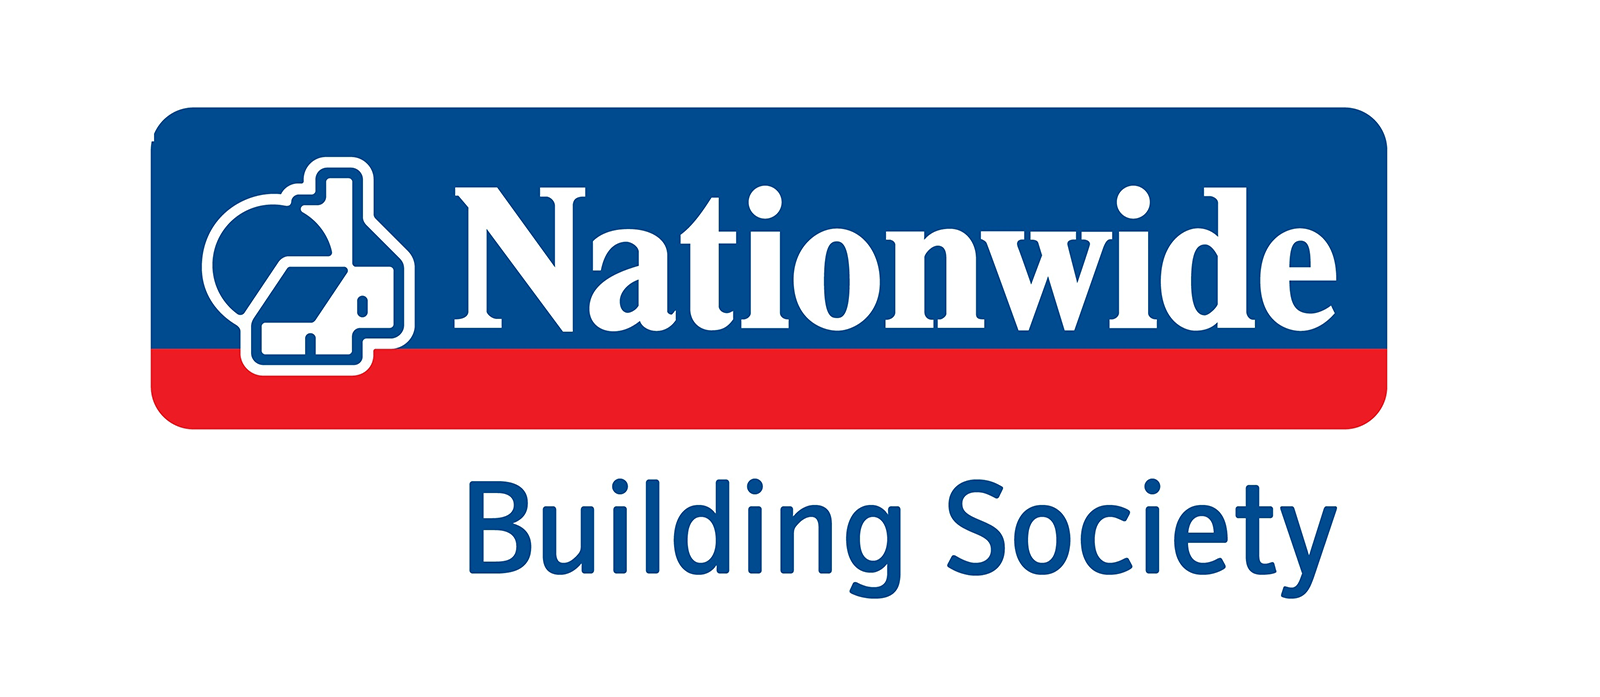 nationwide-logo_W1600